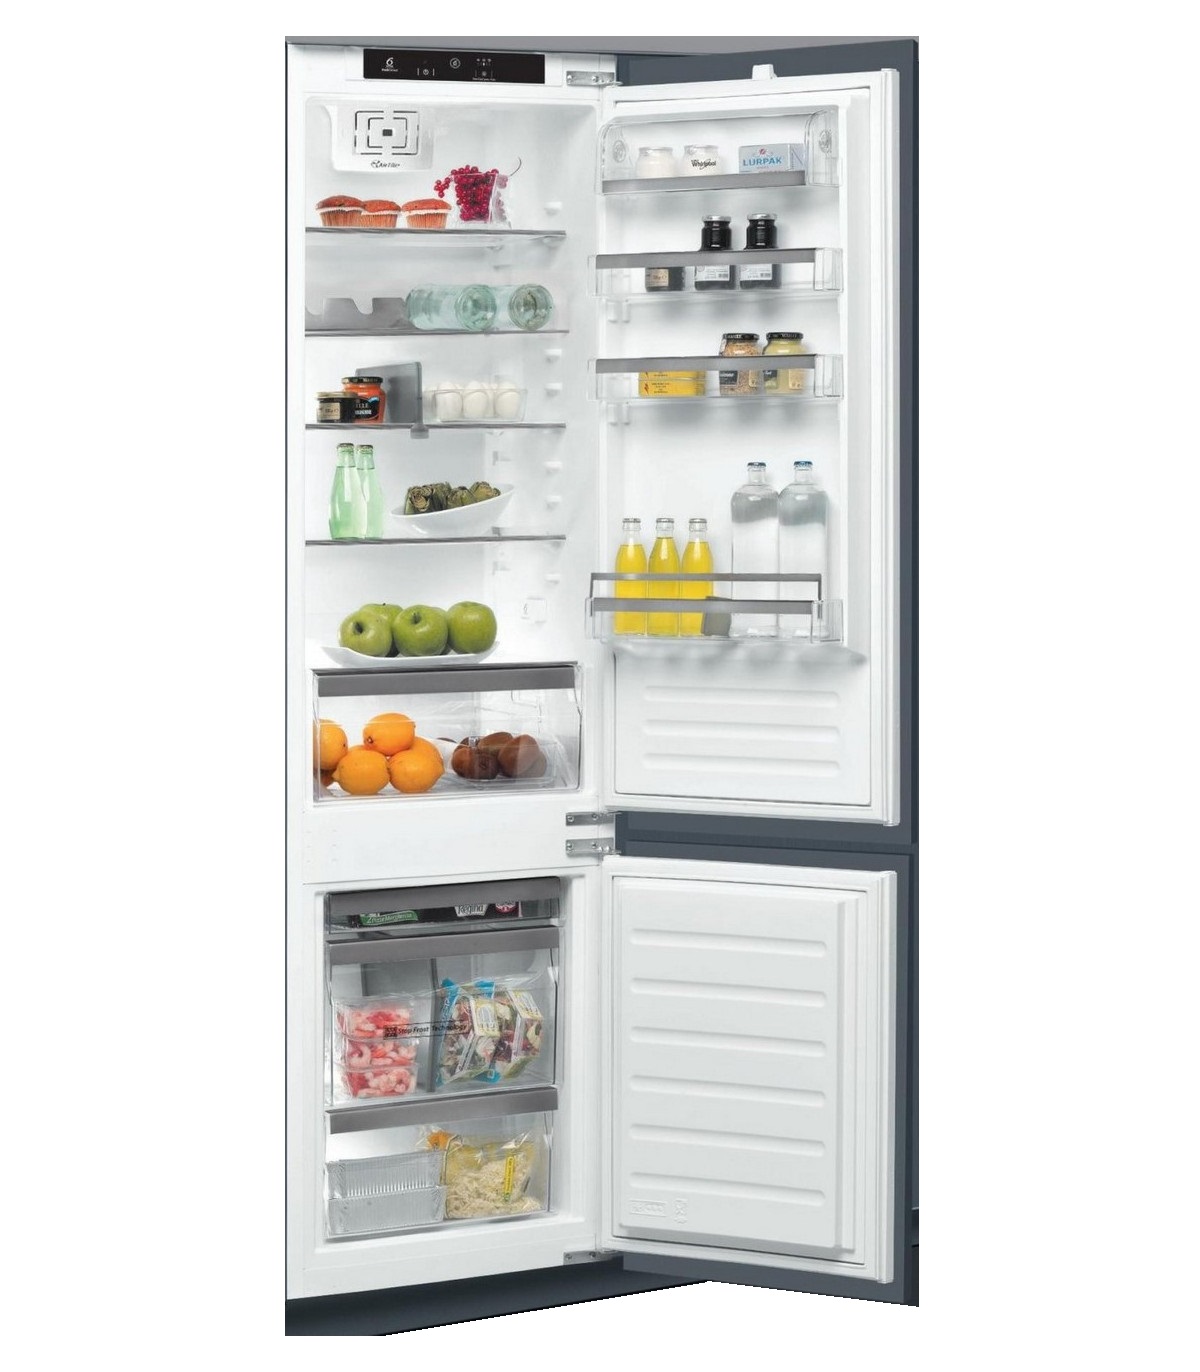 Встраиваемый холодильник Whirlpool ART 9811 SF2 серебристый